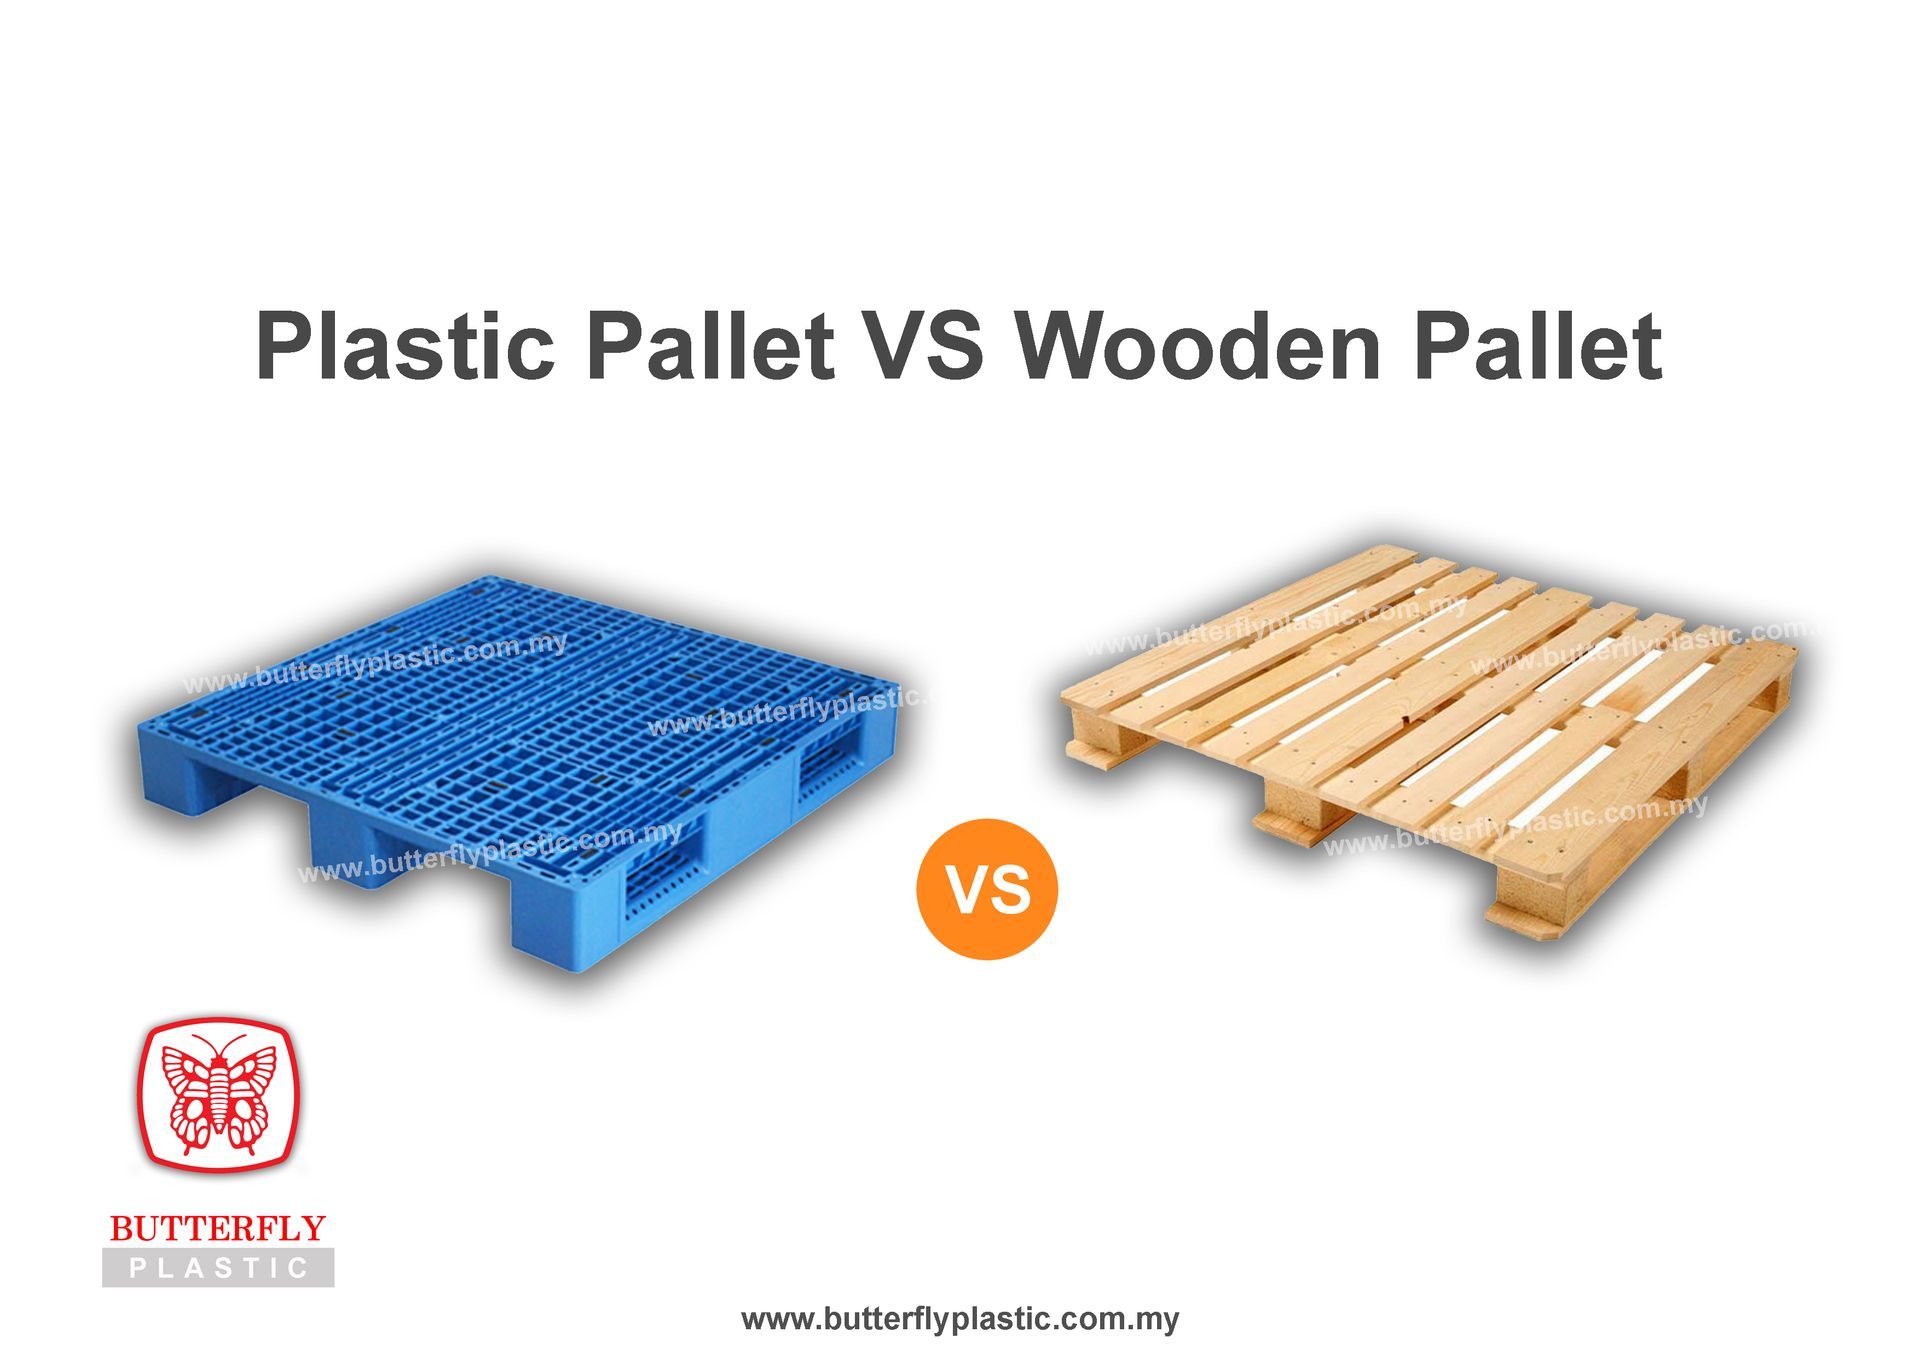 Advantages of Plastic Pallet